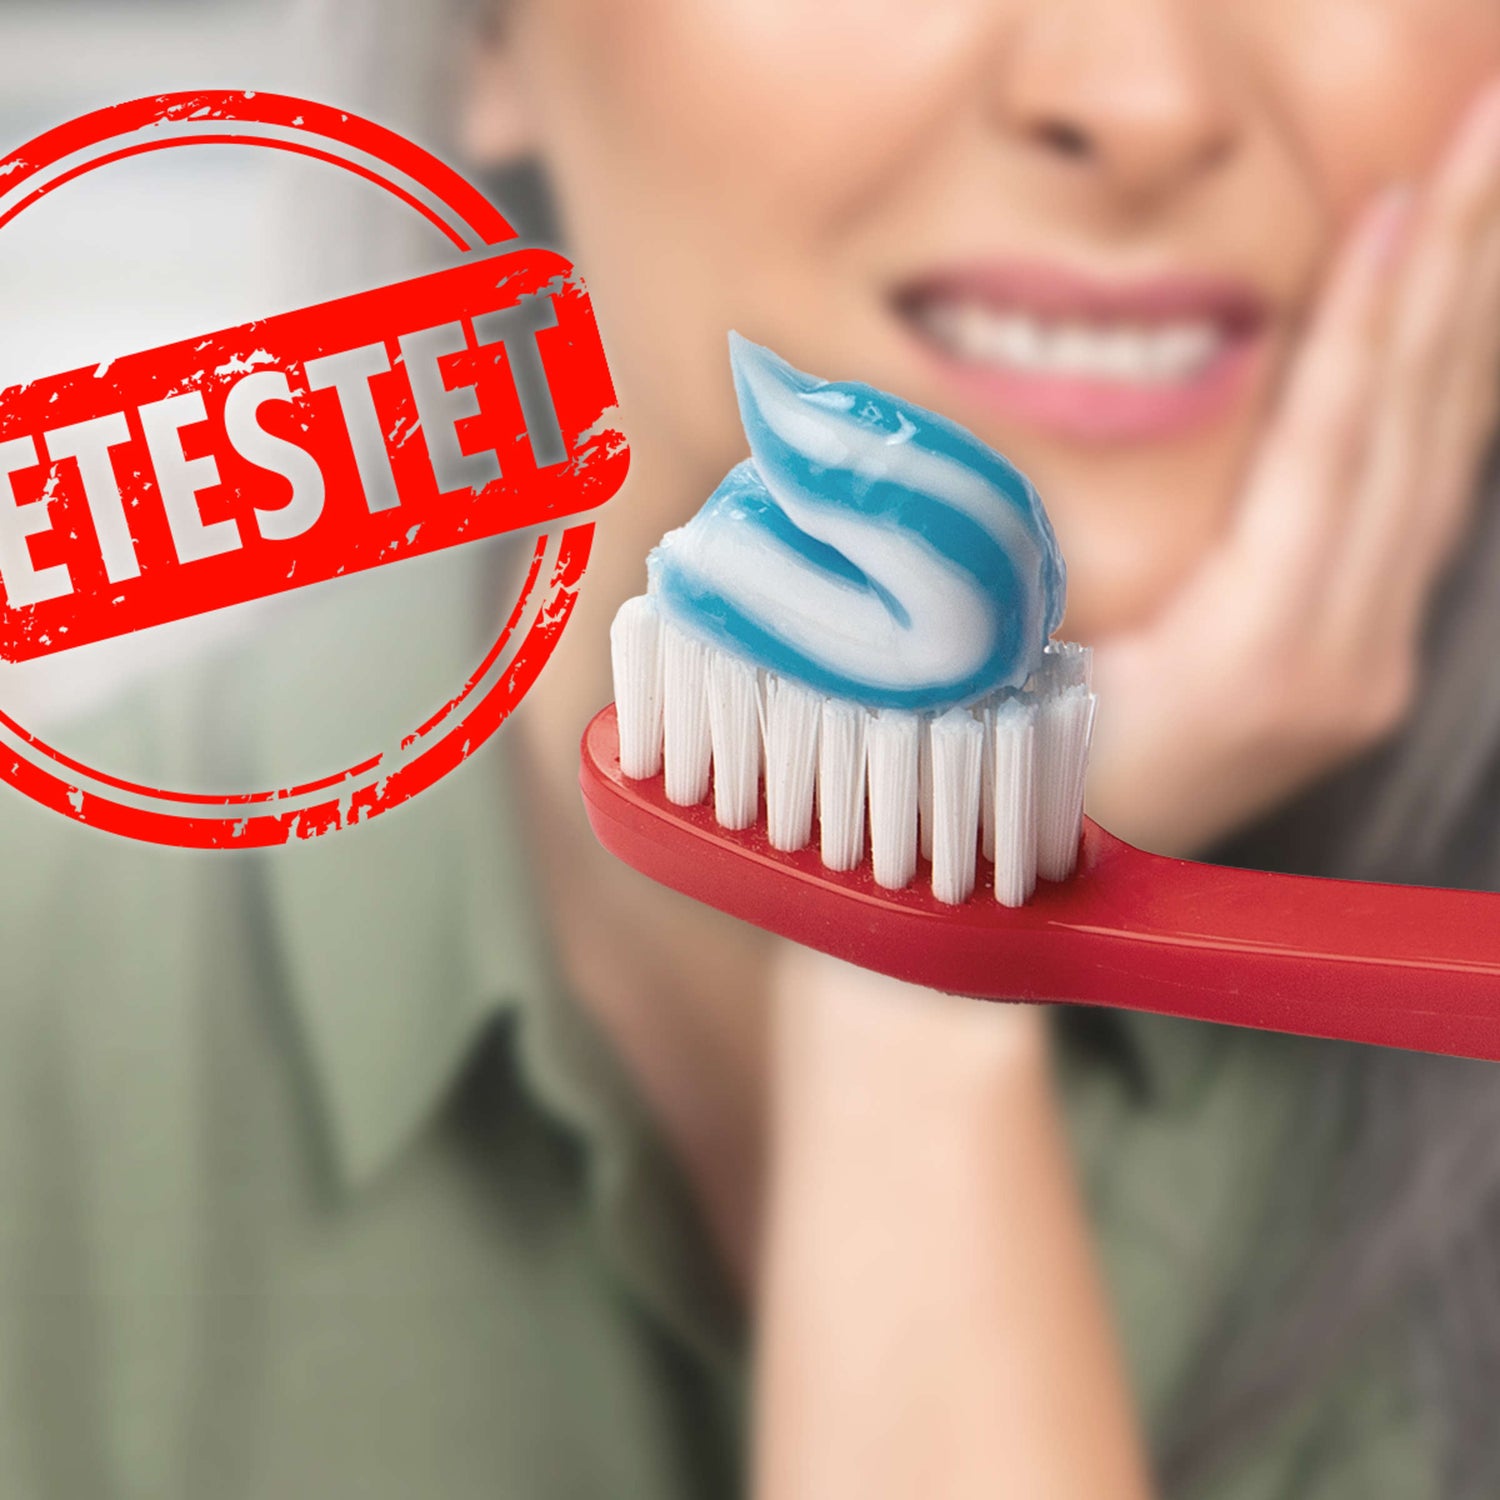 Sensitive Zahnpasta bei schmerzempfindlichen Zähnen - Warum das nicht immer eine gute Wahl ist